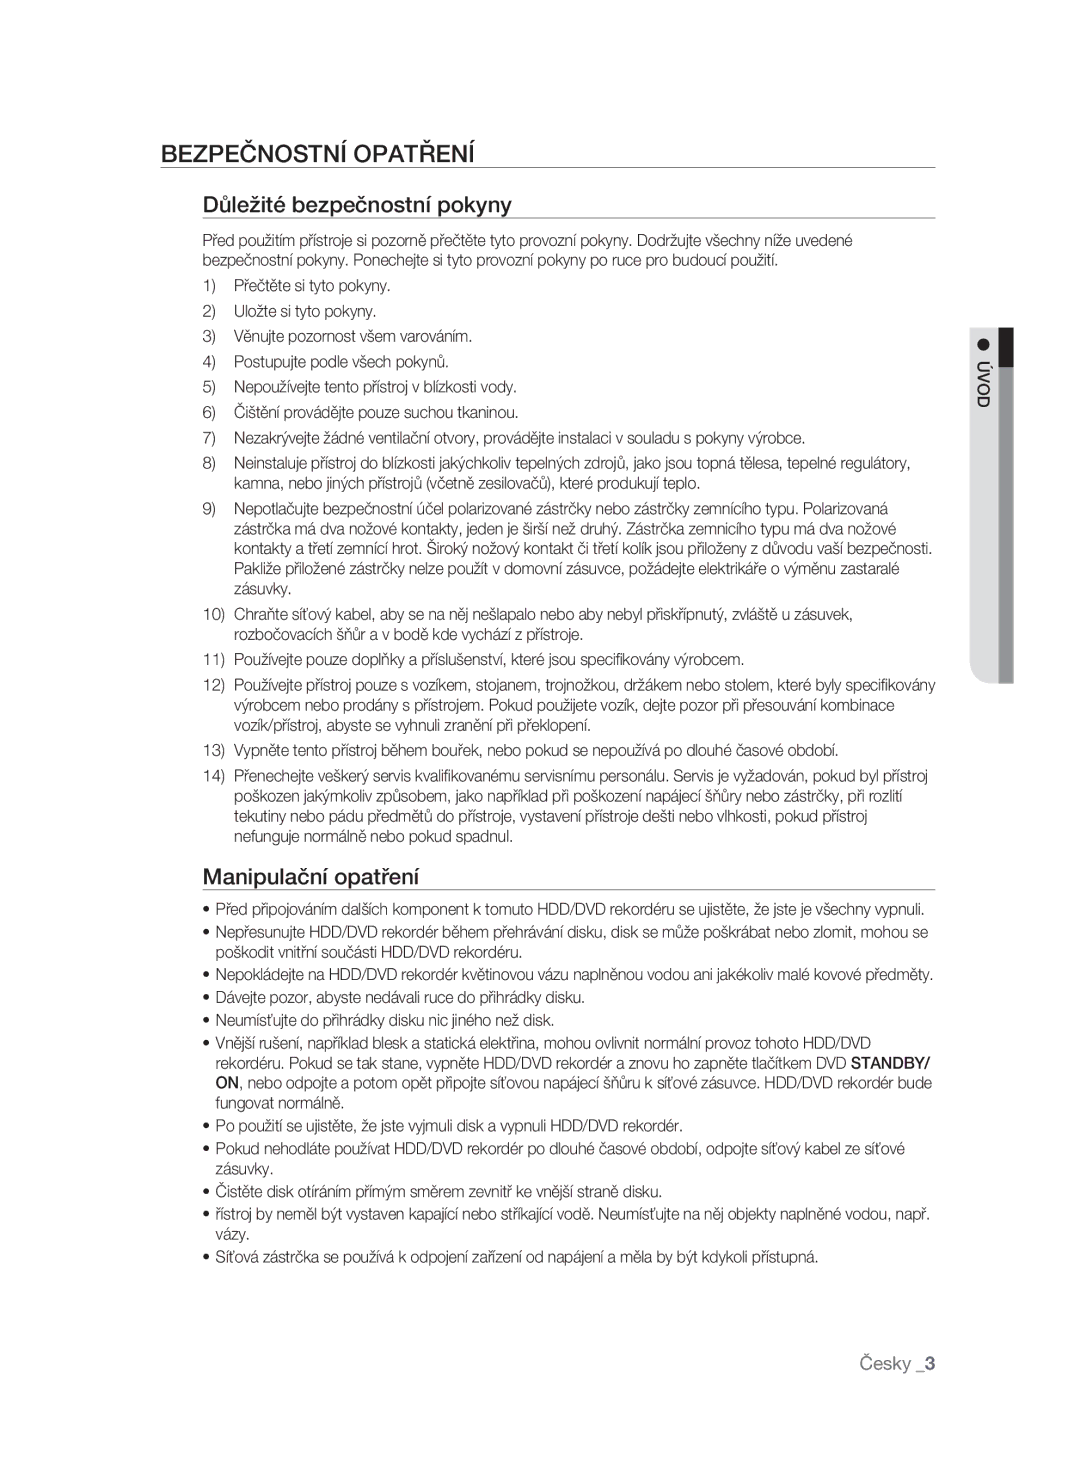 Samsung DVD-SH897/EDC, DVD-SH895/XEF manual Bezpečnostní Opatření, Důležité bezpečnostní pokyny, Manipulační opatření, Úvod 